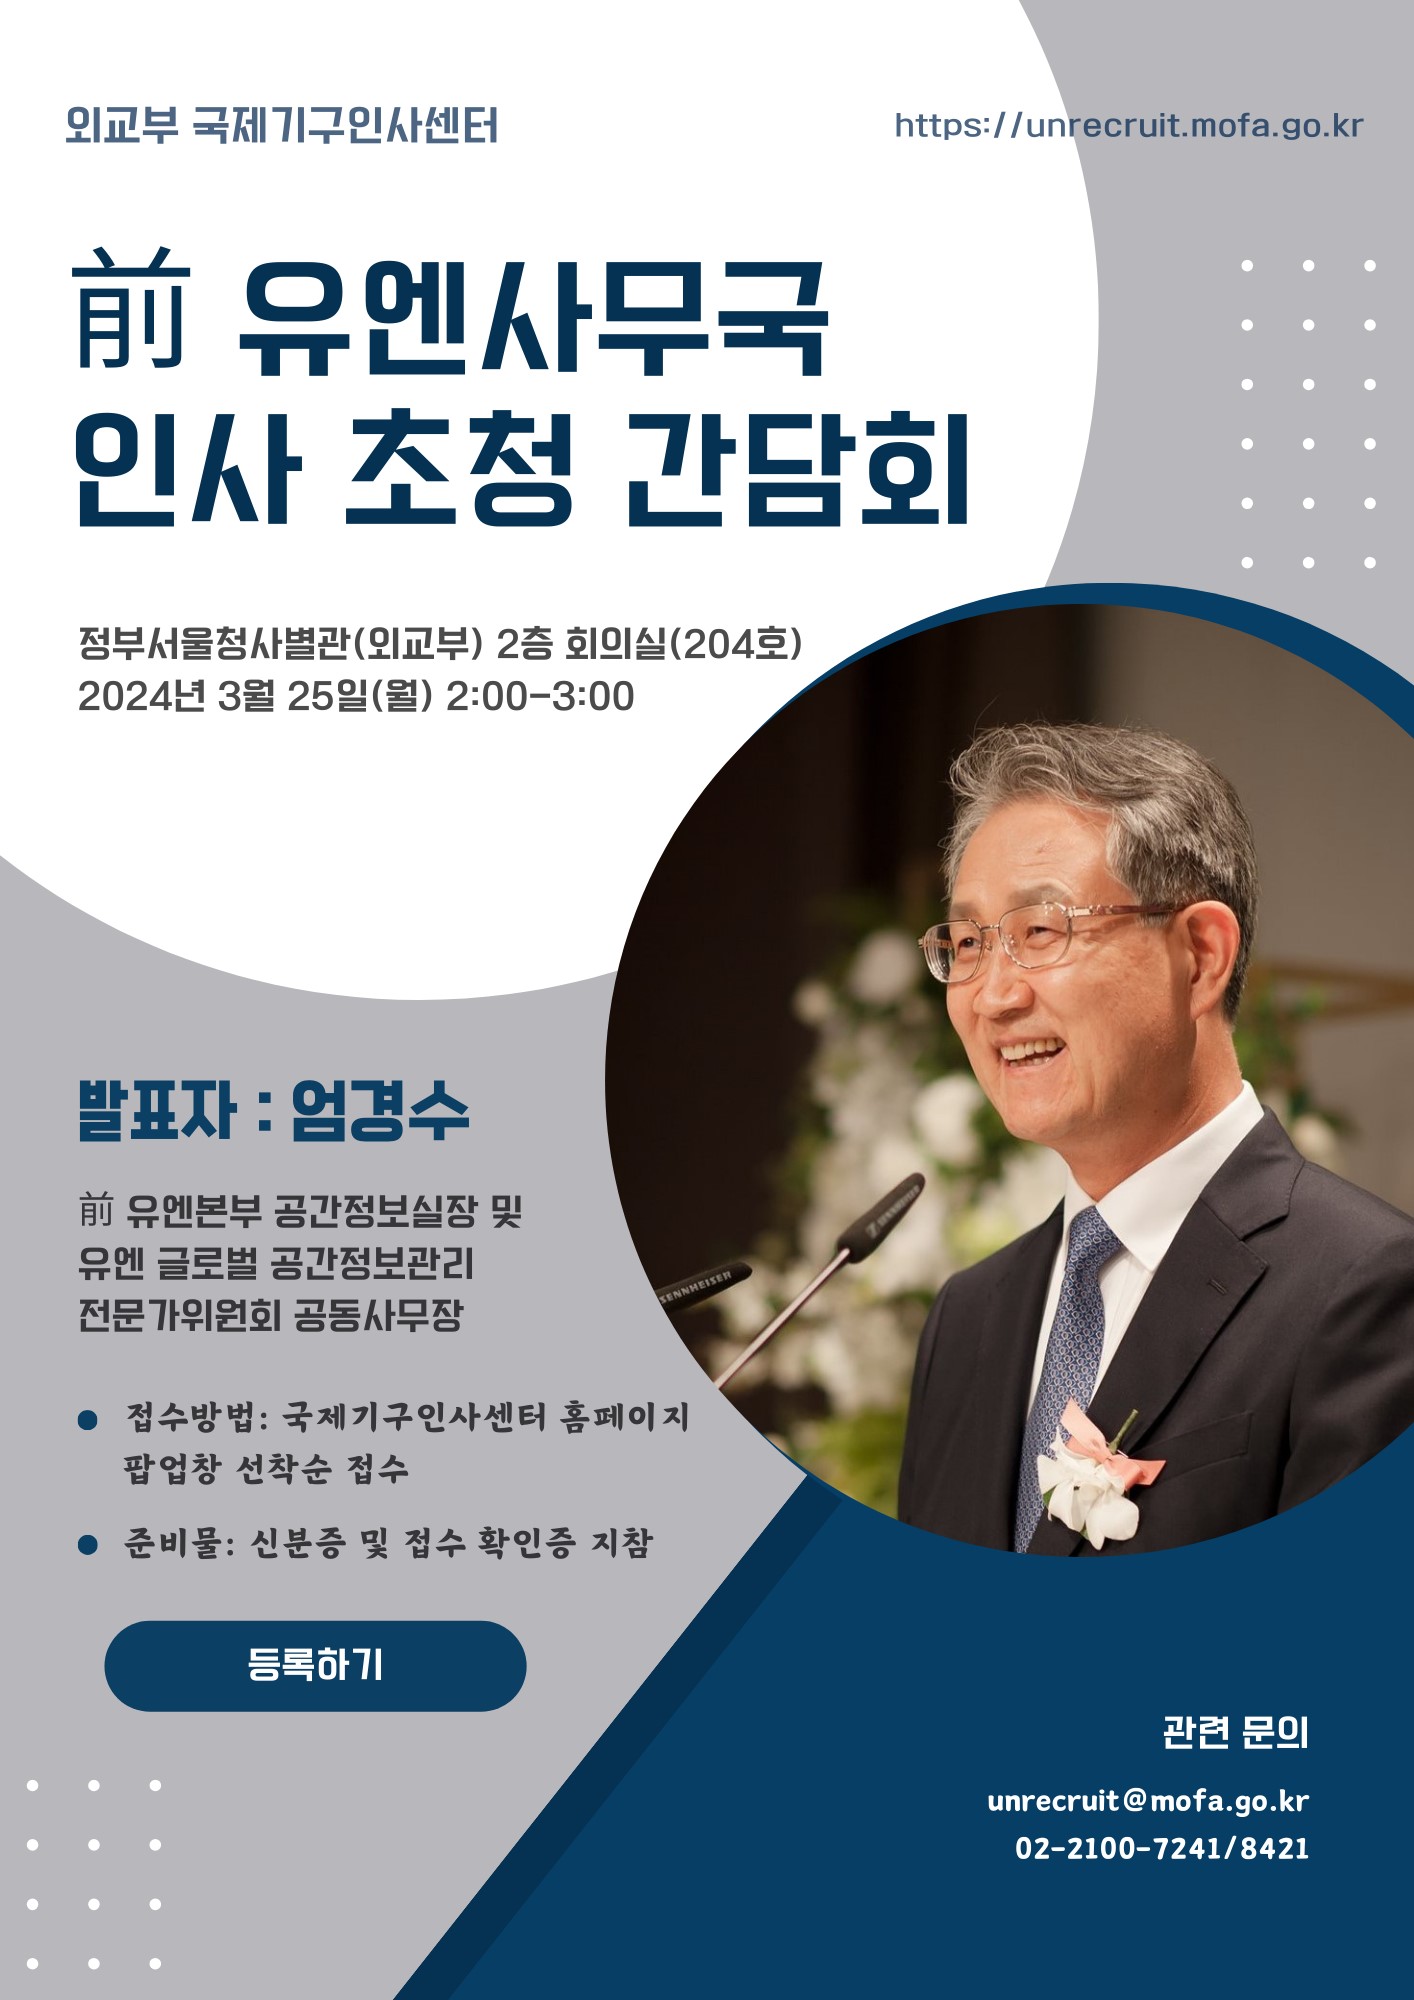 前 유엔사무국 인사 초청 간담회 개최(3.25)